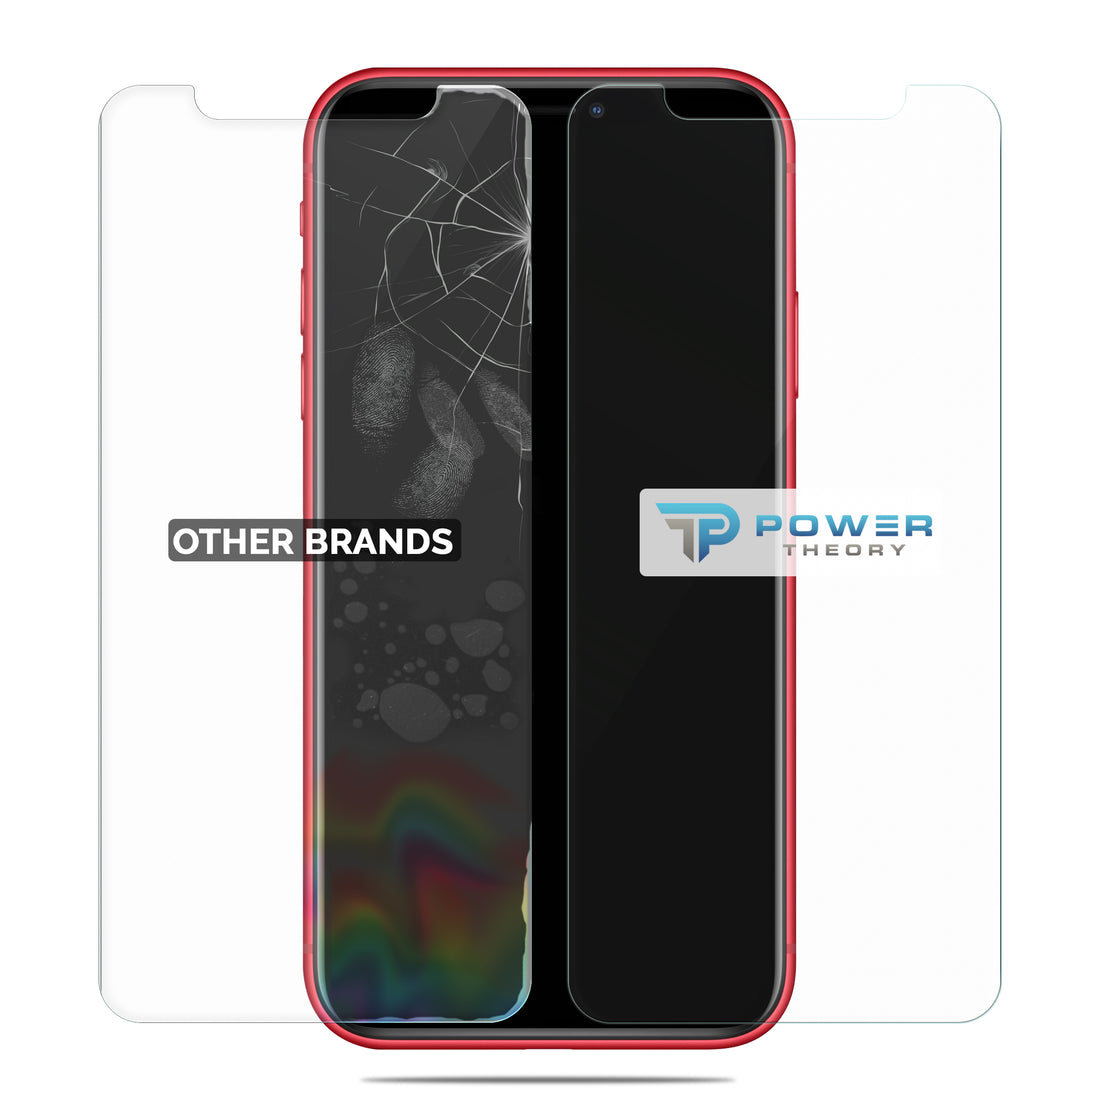 Power Theory Schutzfolie kompatibel mit iPhone 11/iPhone XR [2 Stück] - mit Schablone, Glas Folie, Displayschutzfolie, Schutzglas Preview #6